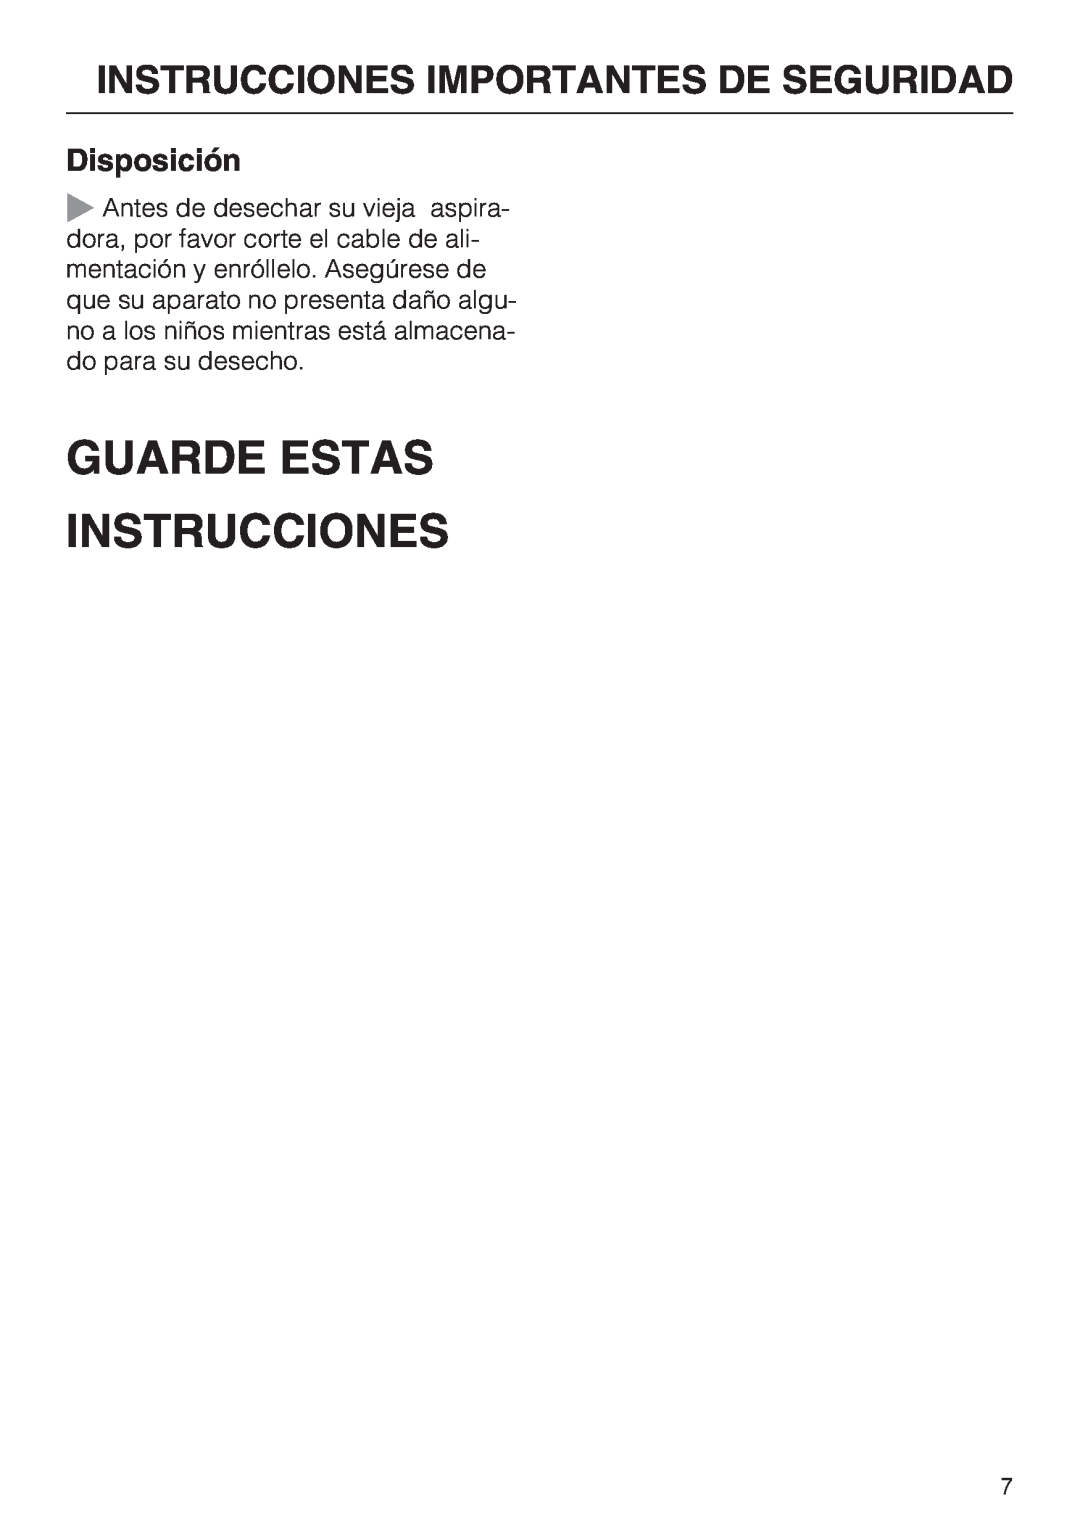 Miele S 2000 operating instructions Guarde Estas Instrucciones, Disposición, Instrucciones Importantes De Seguridad 